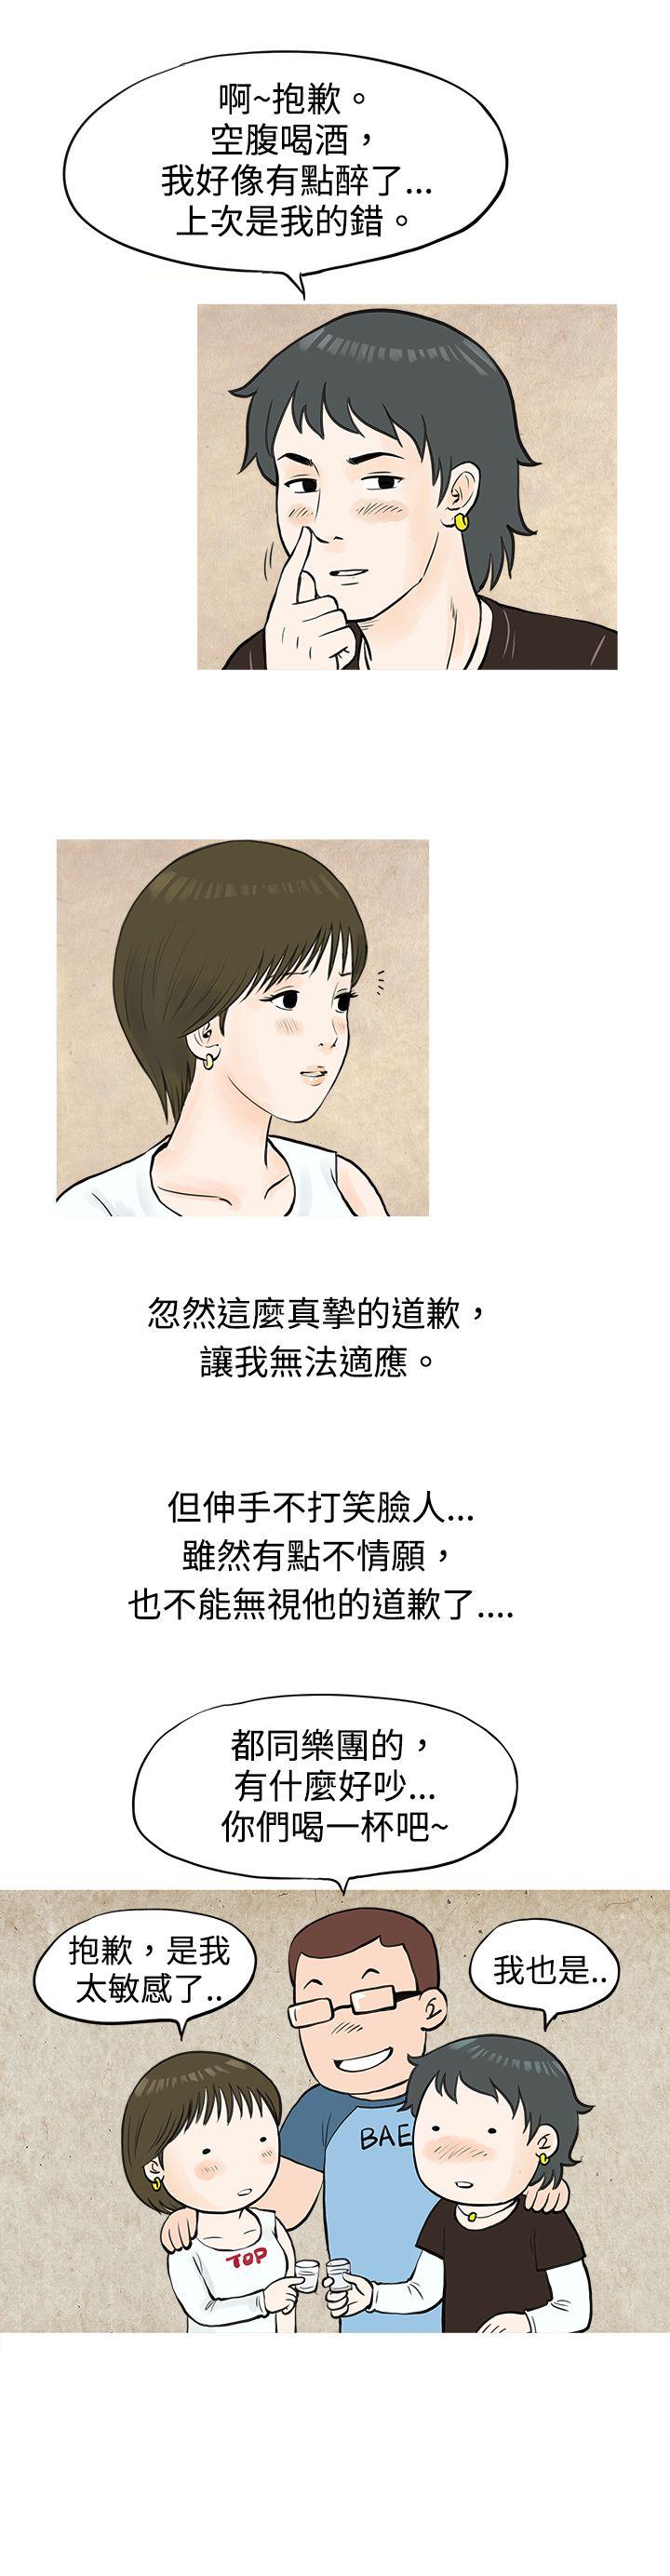 韩国污漫画 秘密Story 发生在热音社的小故事(上) 13